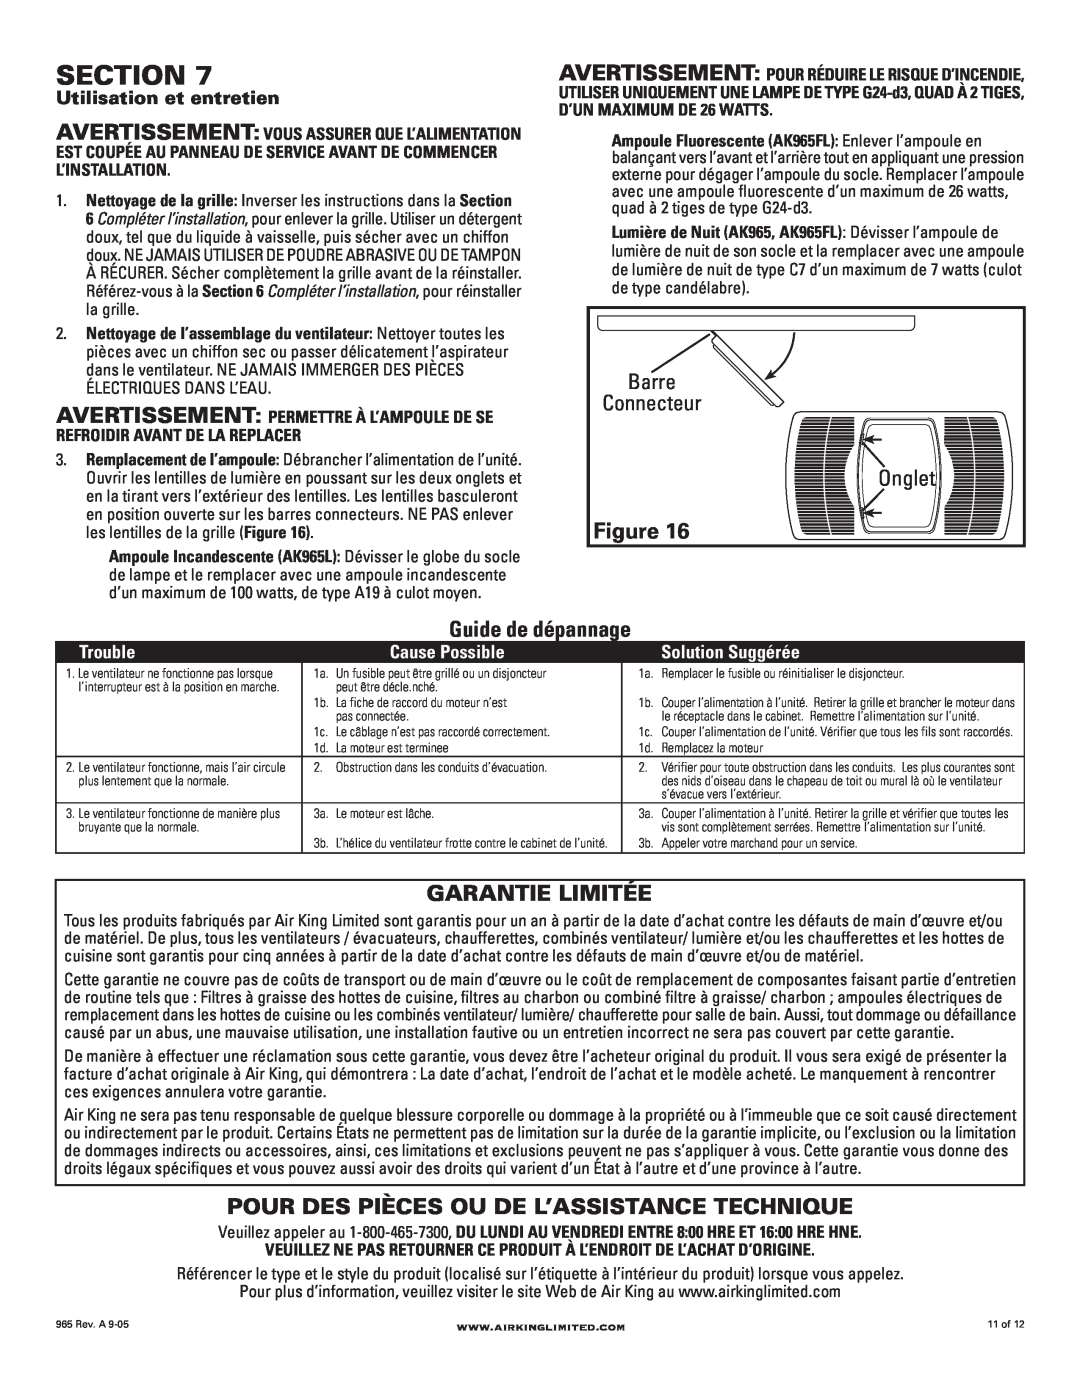 Air King AK965L Section, Guide de dépannage, Garantie Limitée, Pour Des Pièces Ou De L’Assistance Technique, Barre, Onglet 